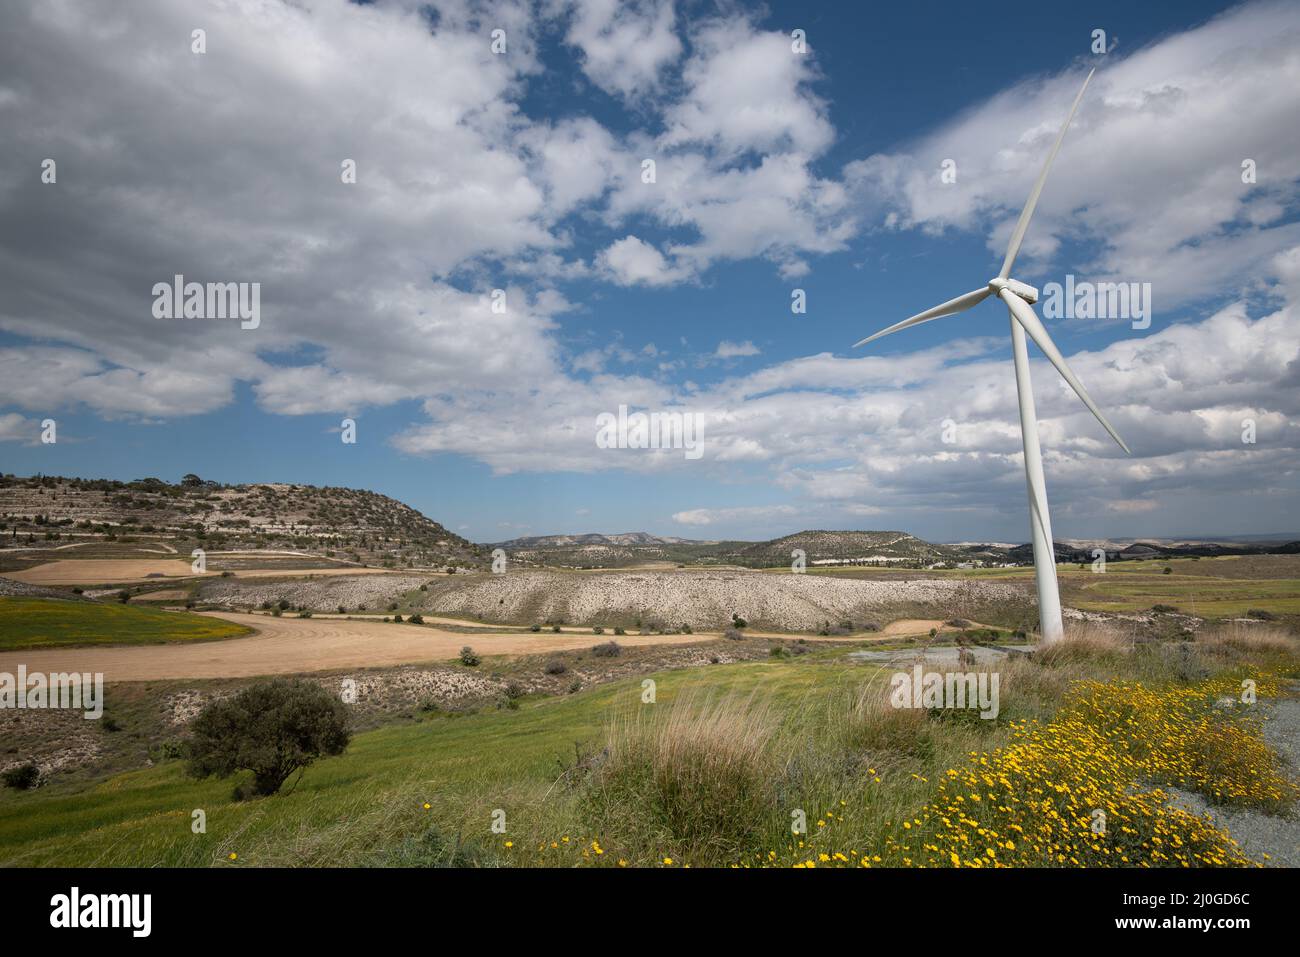 Éoliennes générateurs d'énergie sur un parc d'éoliennes générant de l'électricité à partir du vent. Énergies renouvelables alternatives. Banque D'Images